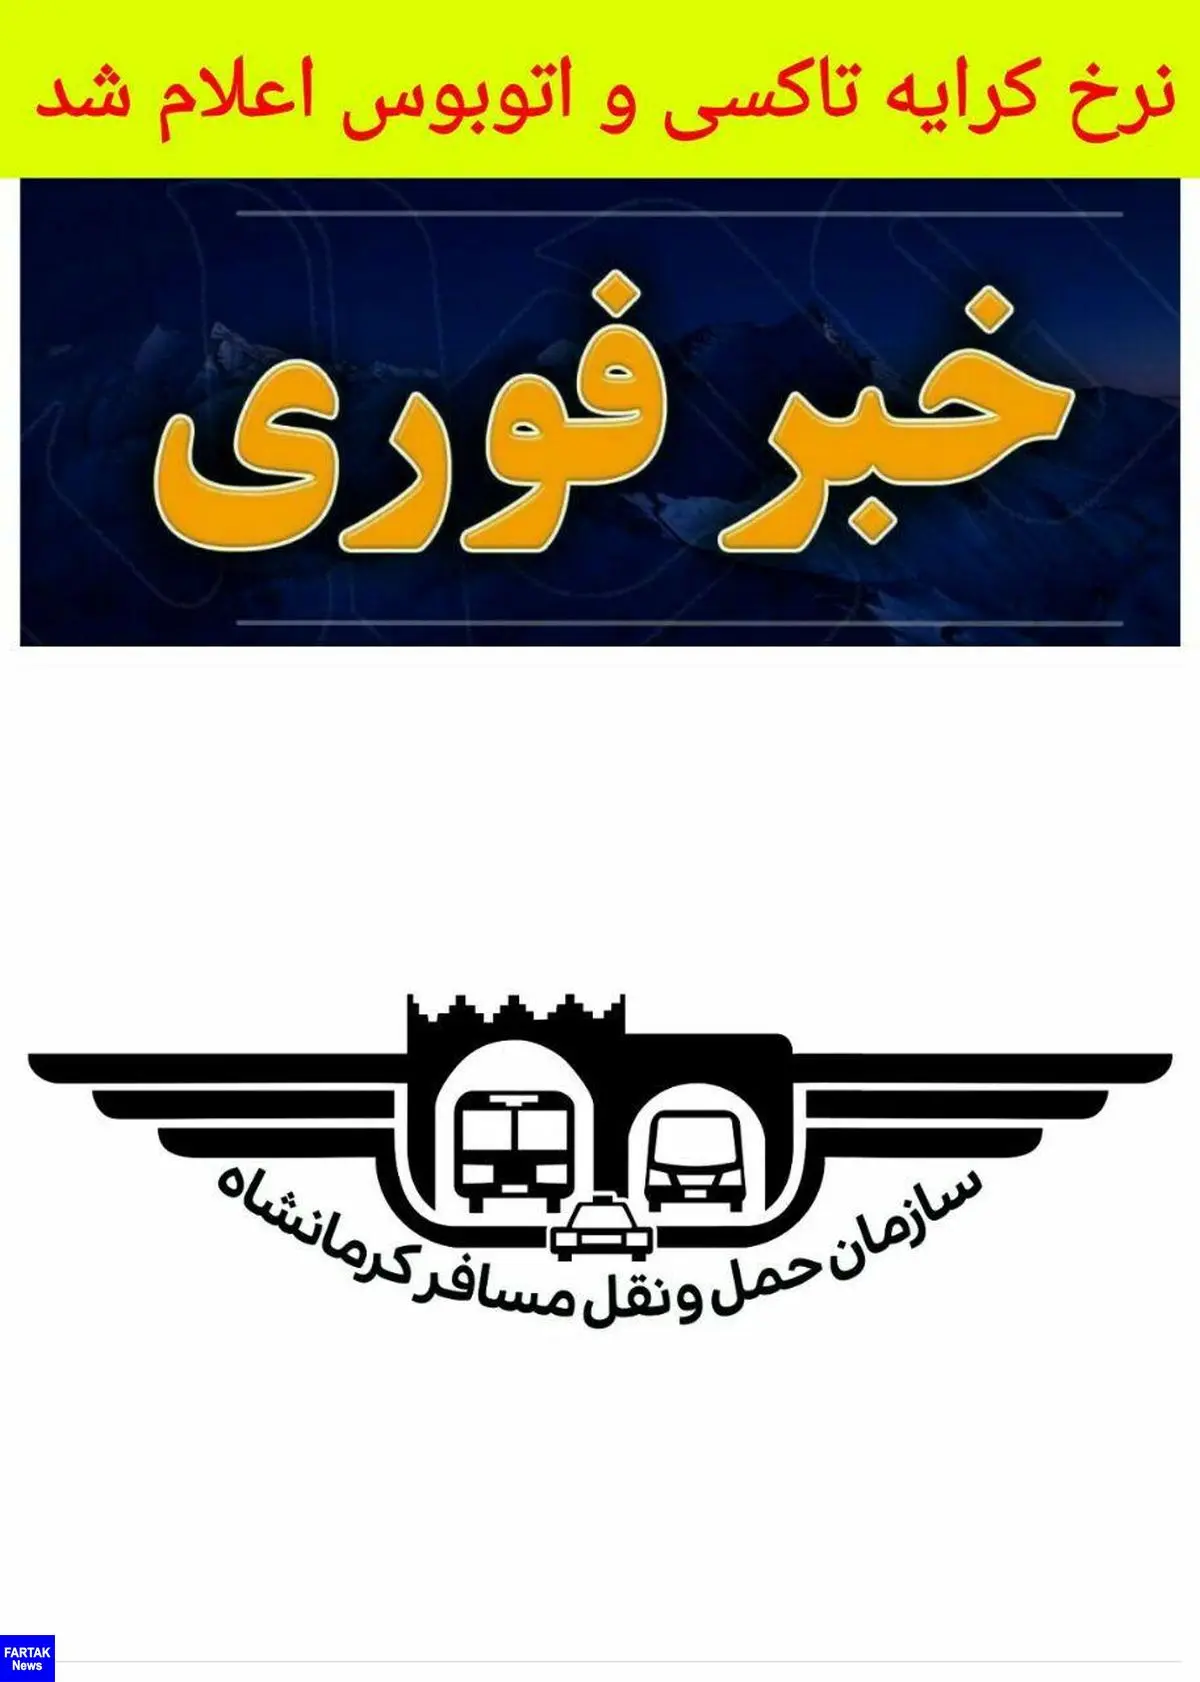 نرخ های جدید کرایه تاکسی و اتوبوس از امروز 6 خرداد ماه اعمال می شود